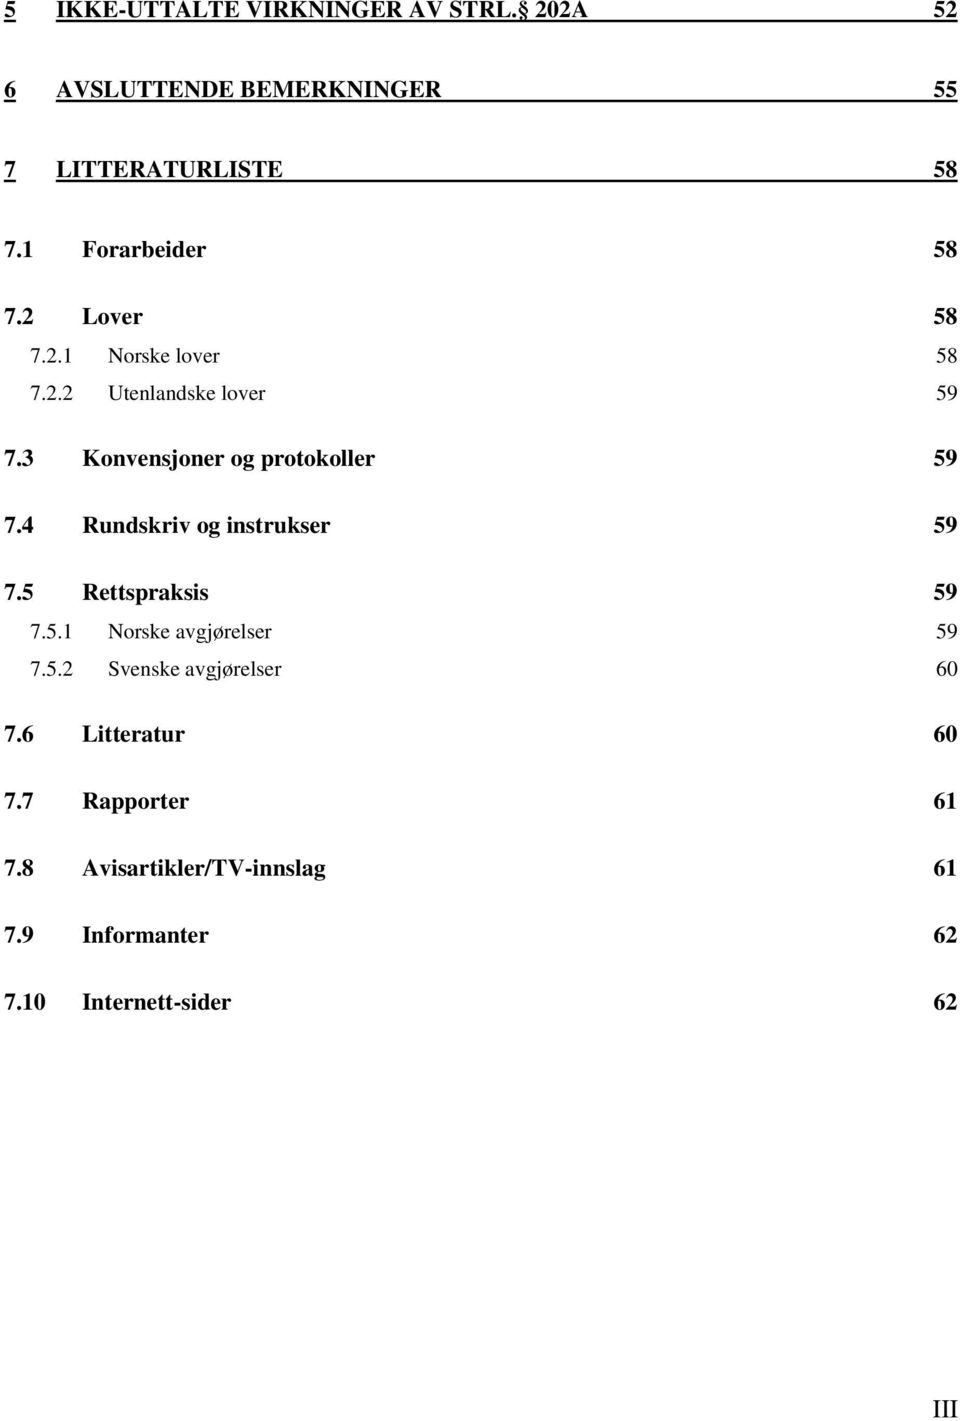 3 Konvensjoner og protokoller 59 7.4 Rundskriv og instrukser 59 7.5 Rettspraksis 59 7.5.1 Norske avgjørelser 59 7.